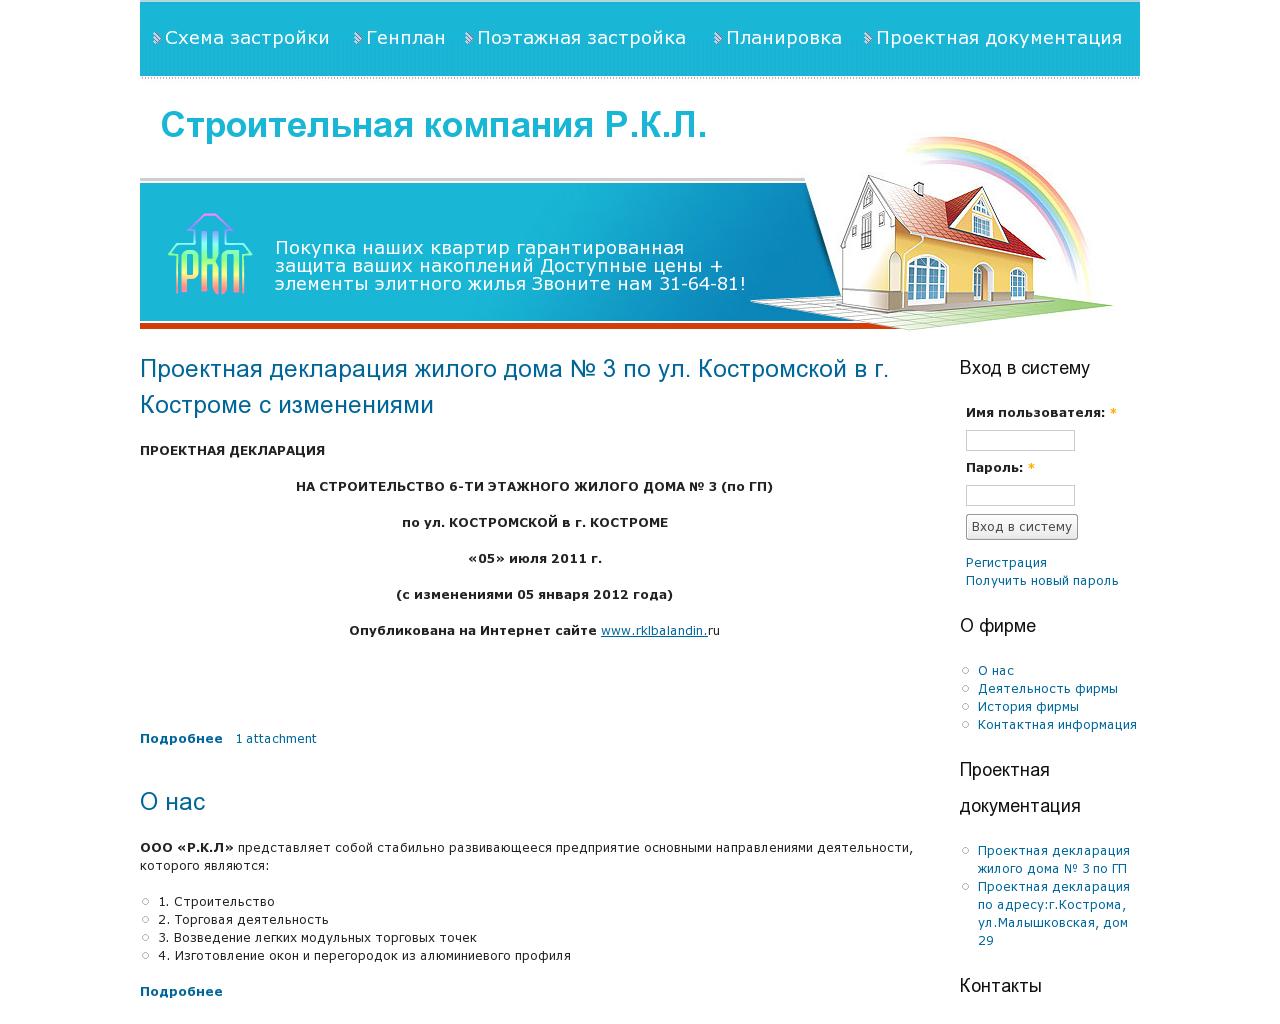 Изображение сайта rklbalandin.ru в разрешении 1280x1024